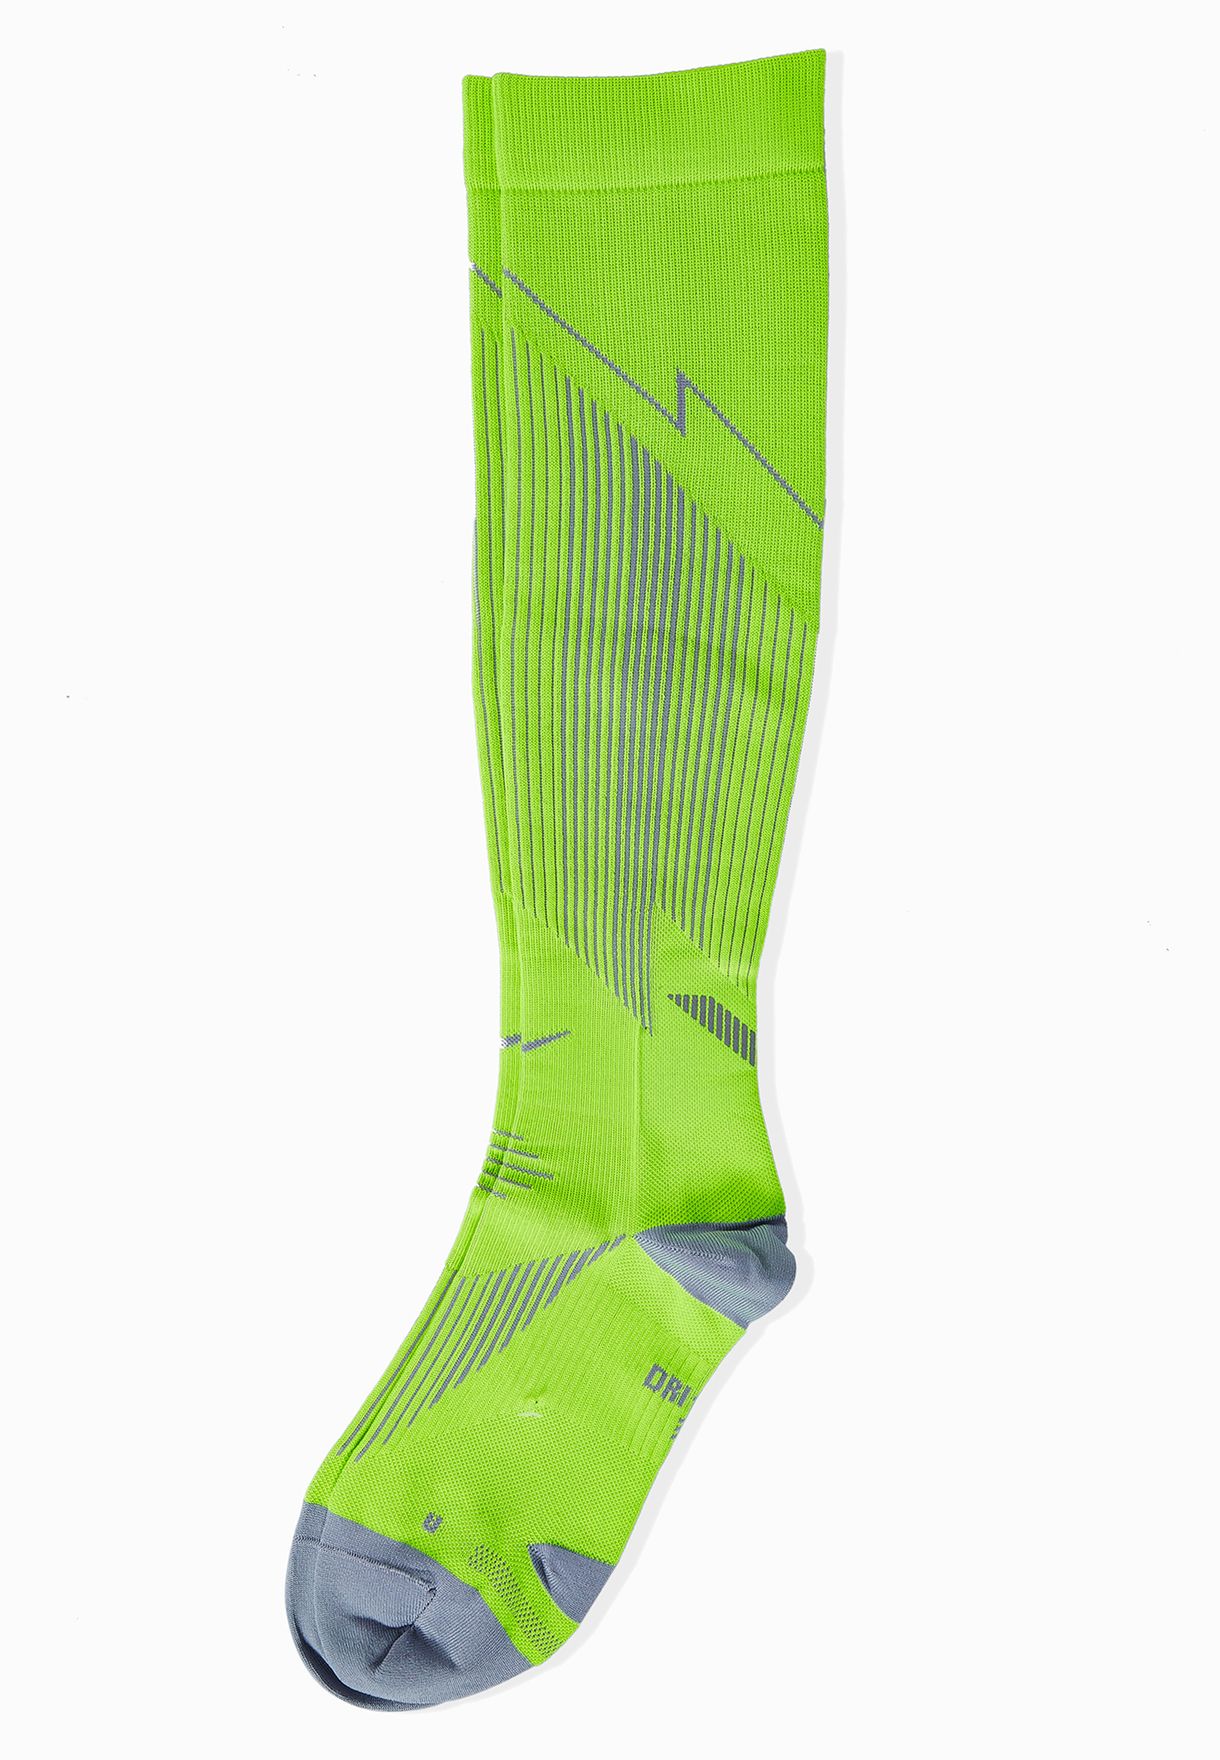 neon running socks